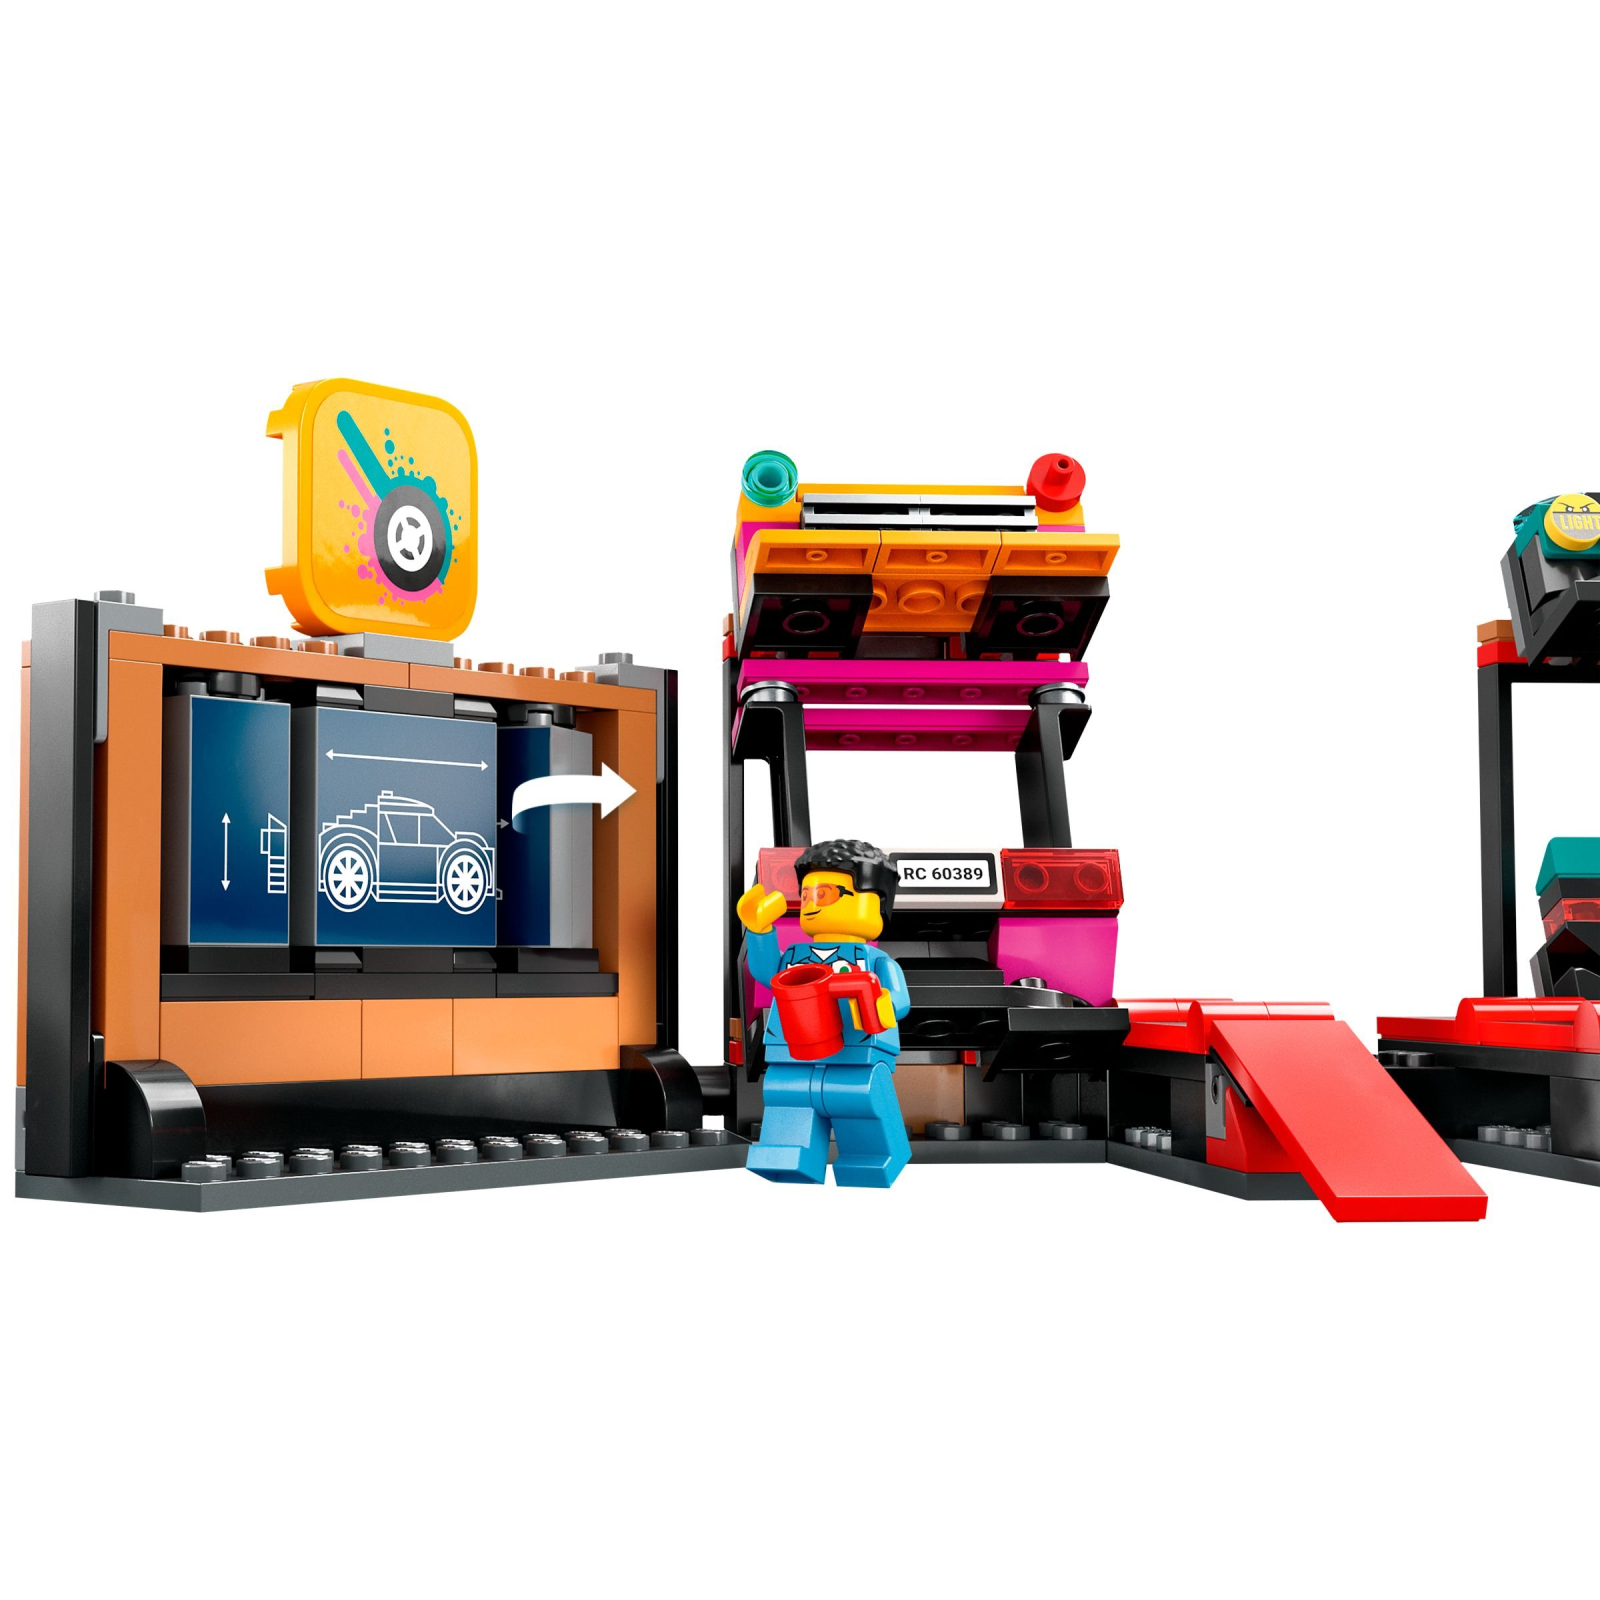 Конструктор LEGO City Тюнинг-ателье 507 деталей (60389) изображение 6